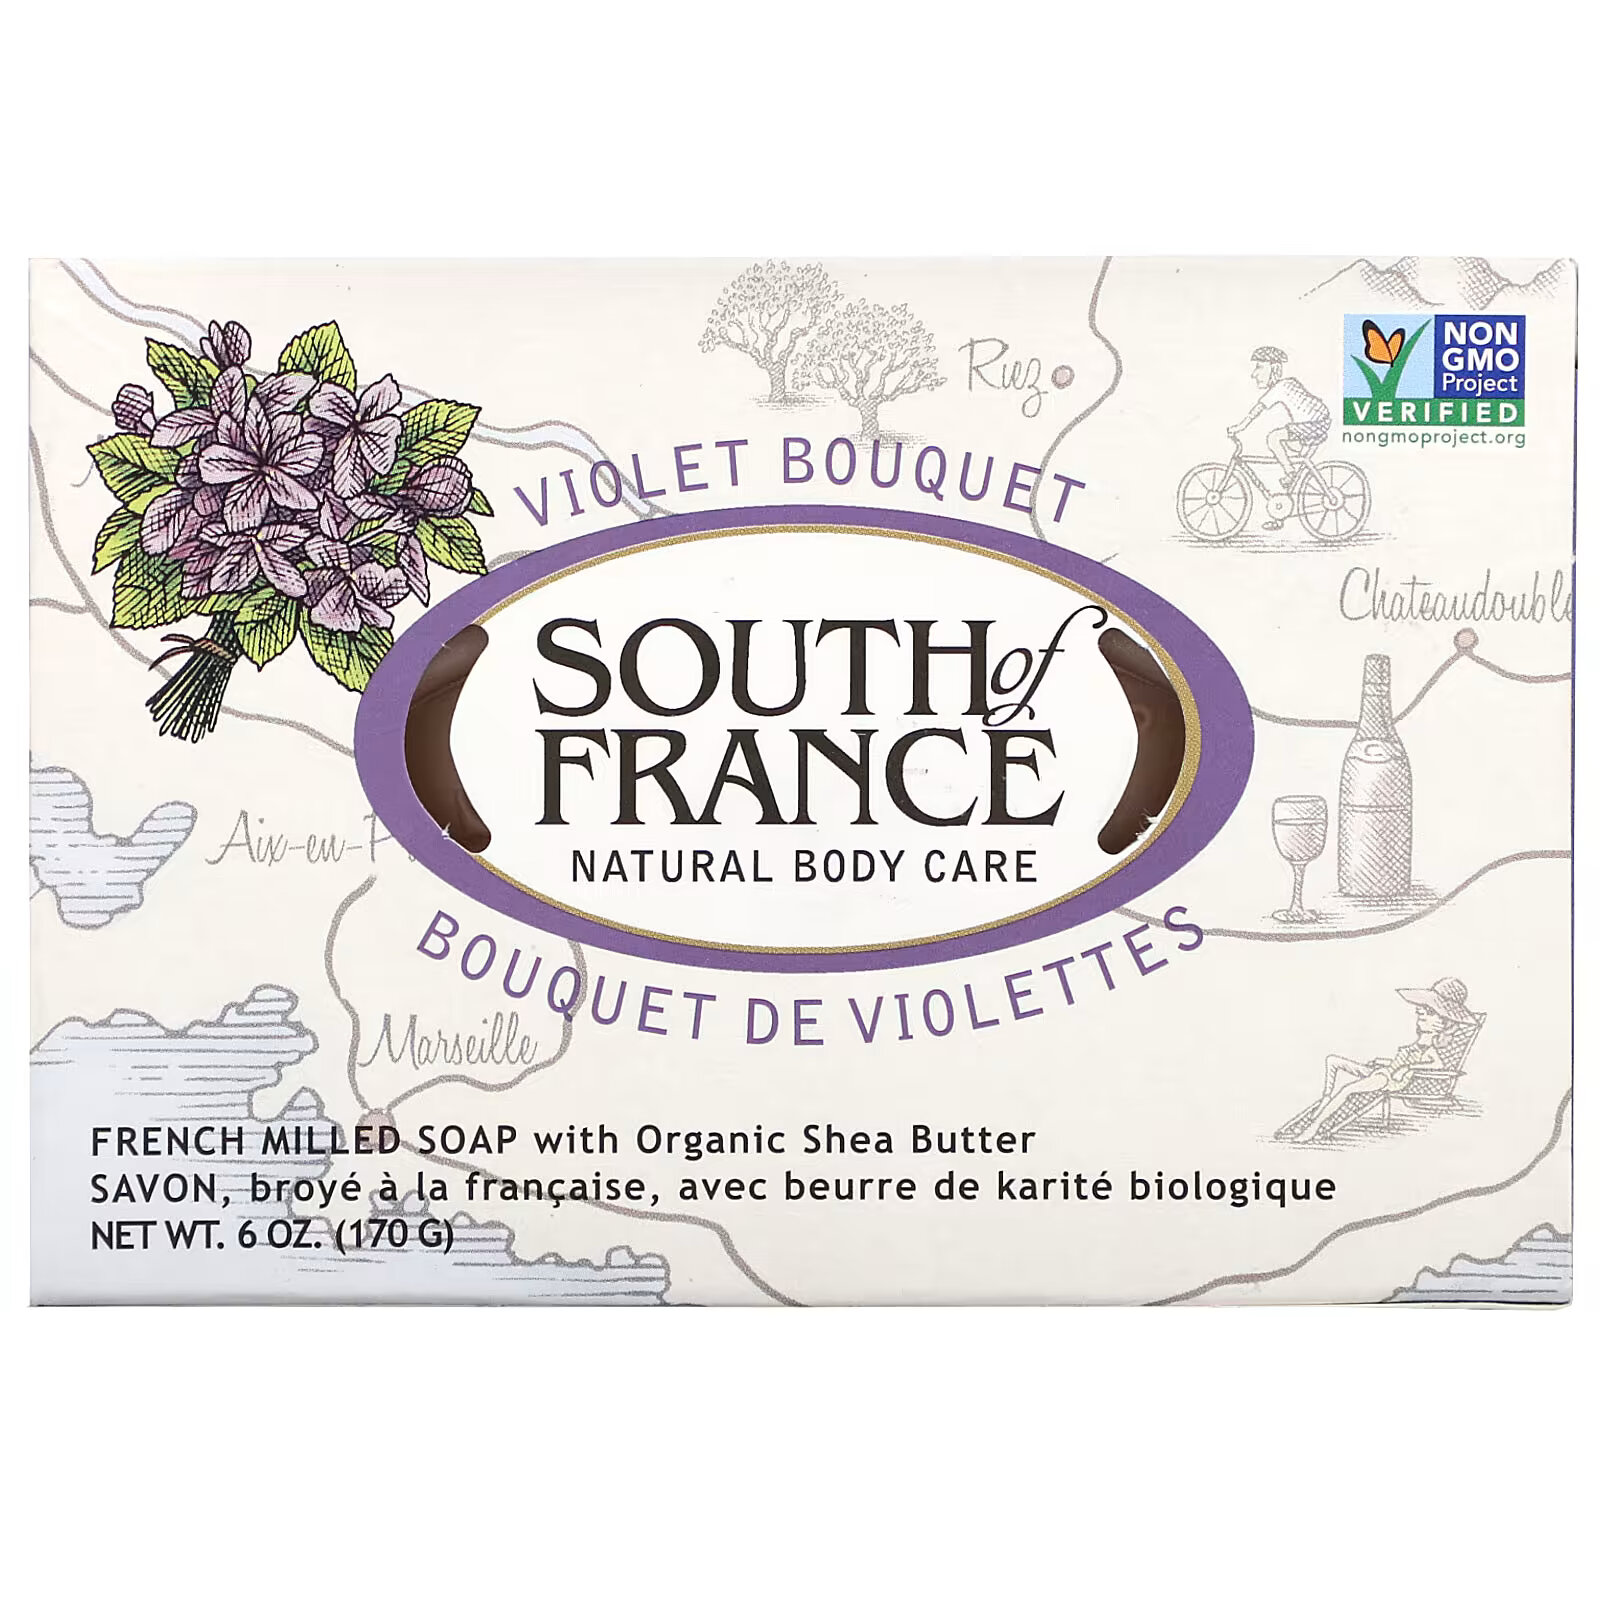 South of France, кусковое мыло французского помола с органическим маслом ши, с запахом букета фиалок, 170 г (6 унций)